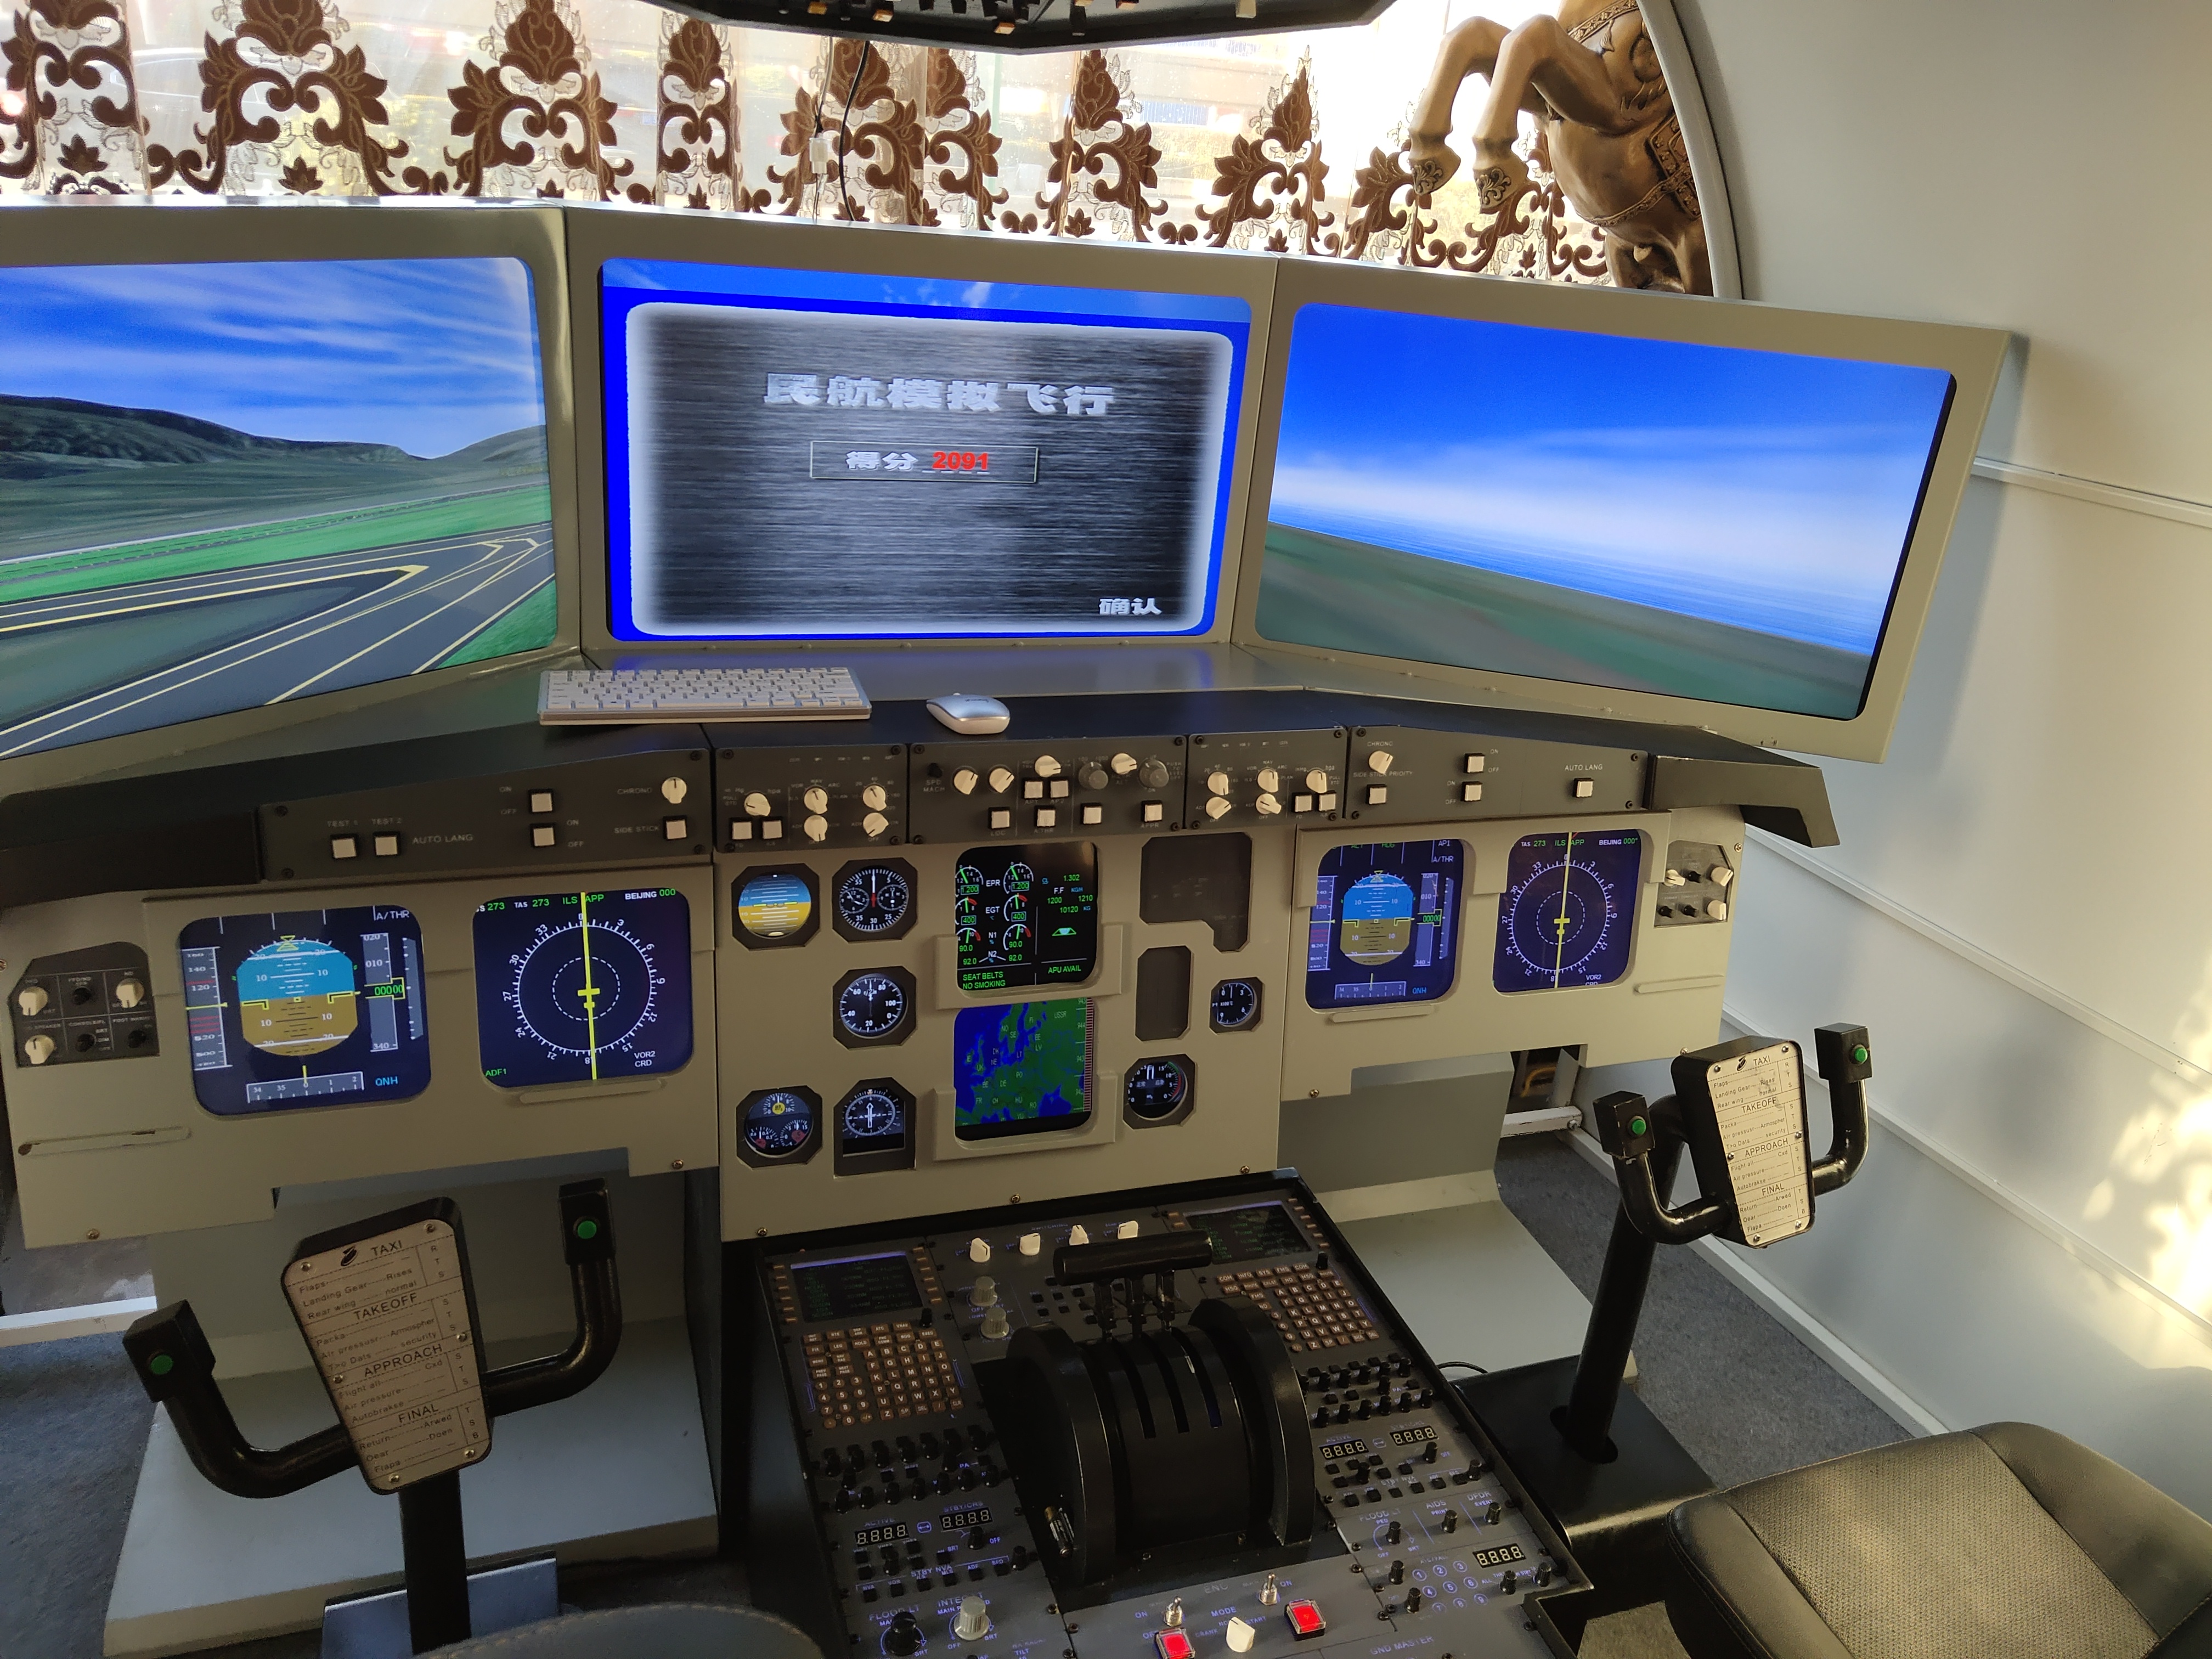 民航飞行模拟器,顶板,操作台及 仪表面板皆为复刻空客飞行驾驶机的